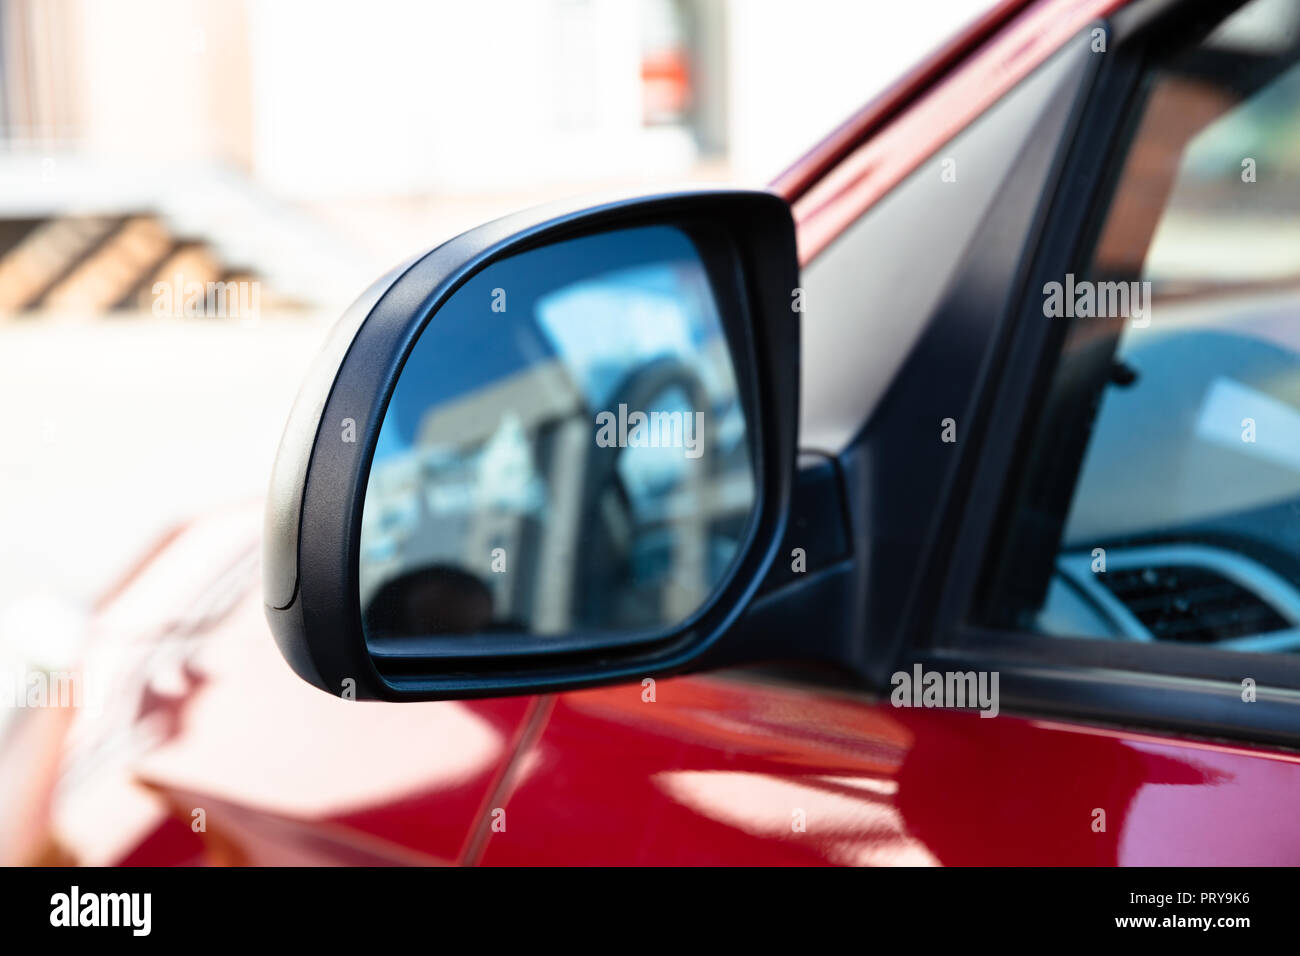 El espejo retrovisor de un automóvil en la calle Foto de stock